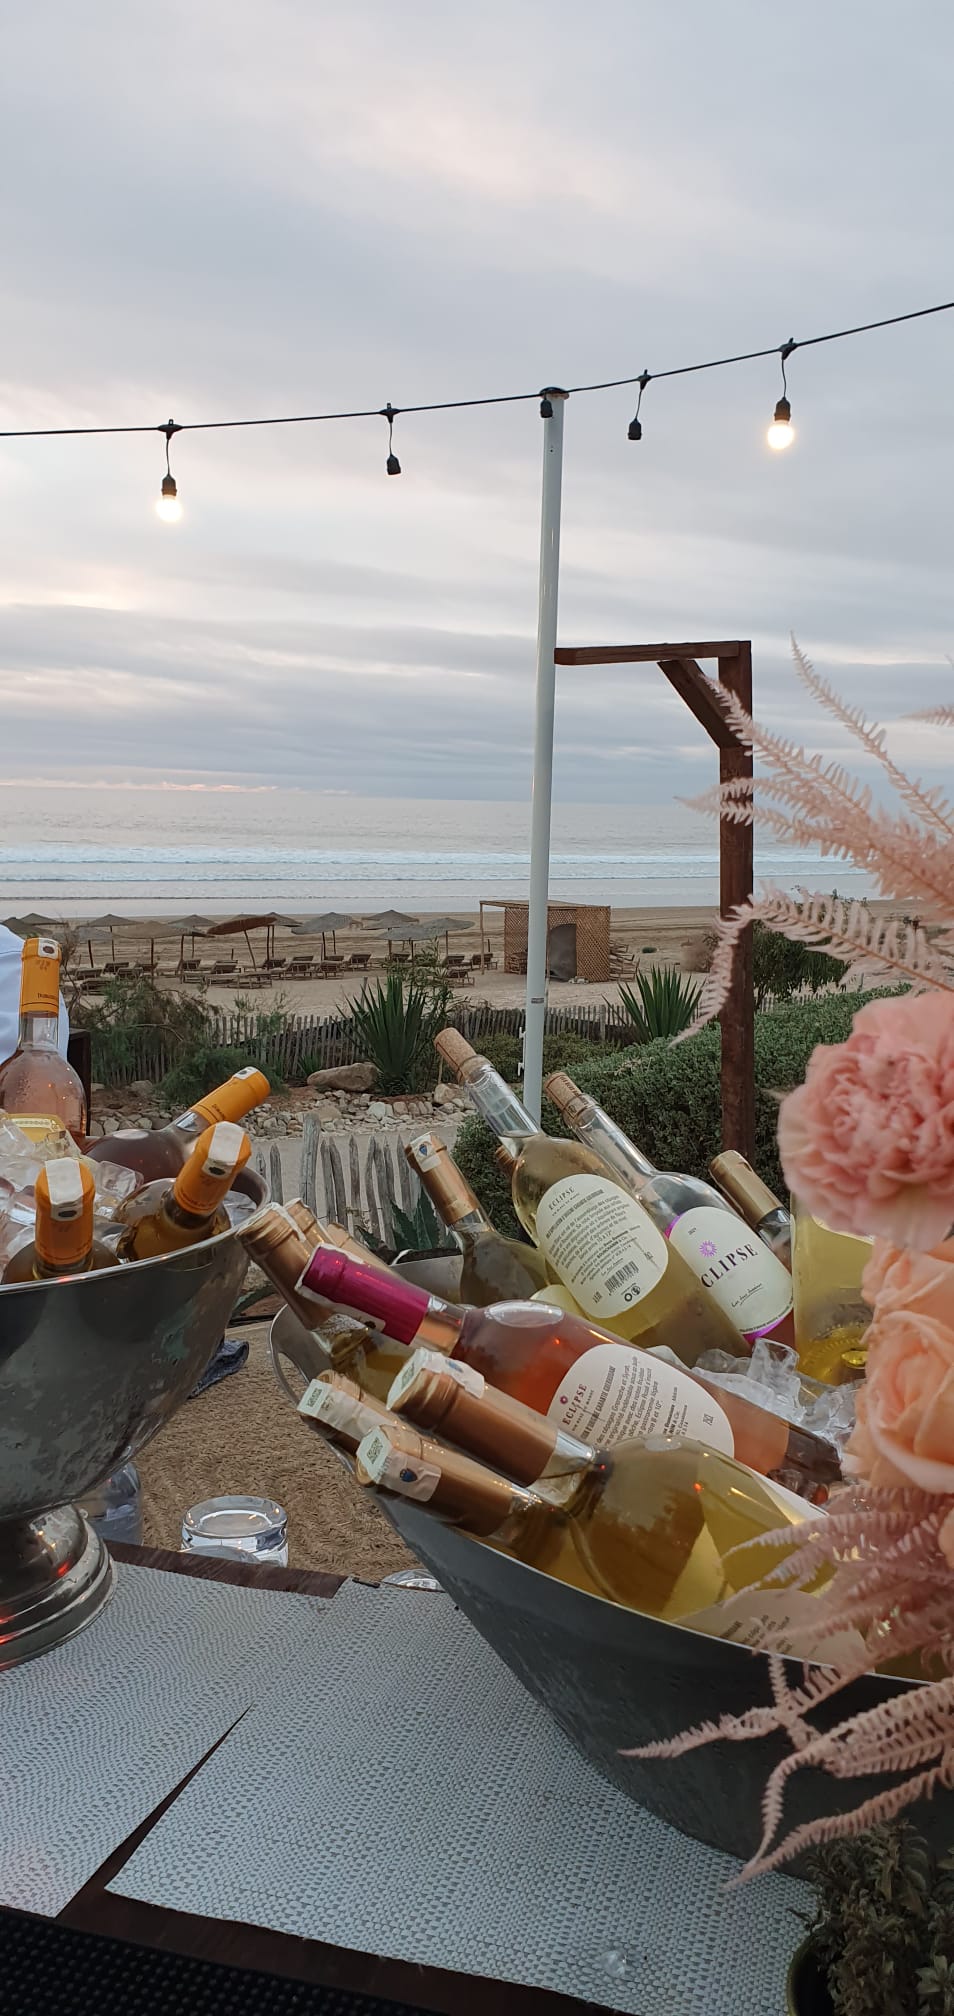 Eine Edelstahlschüssel mit Eiswürfen und alkoholischen Getränken in Flaschen an einem Tisch am Strand mit Licherkette